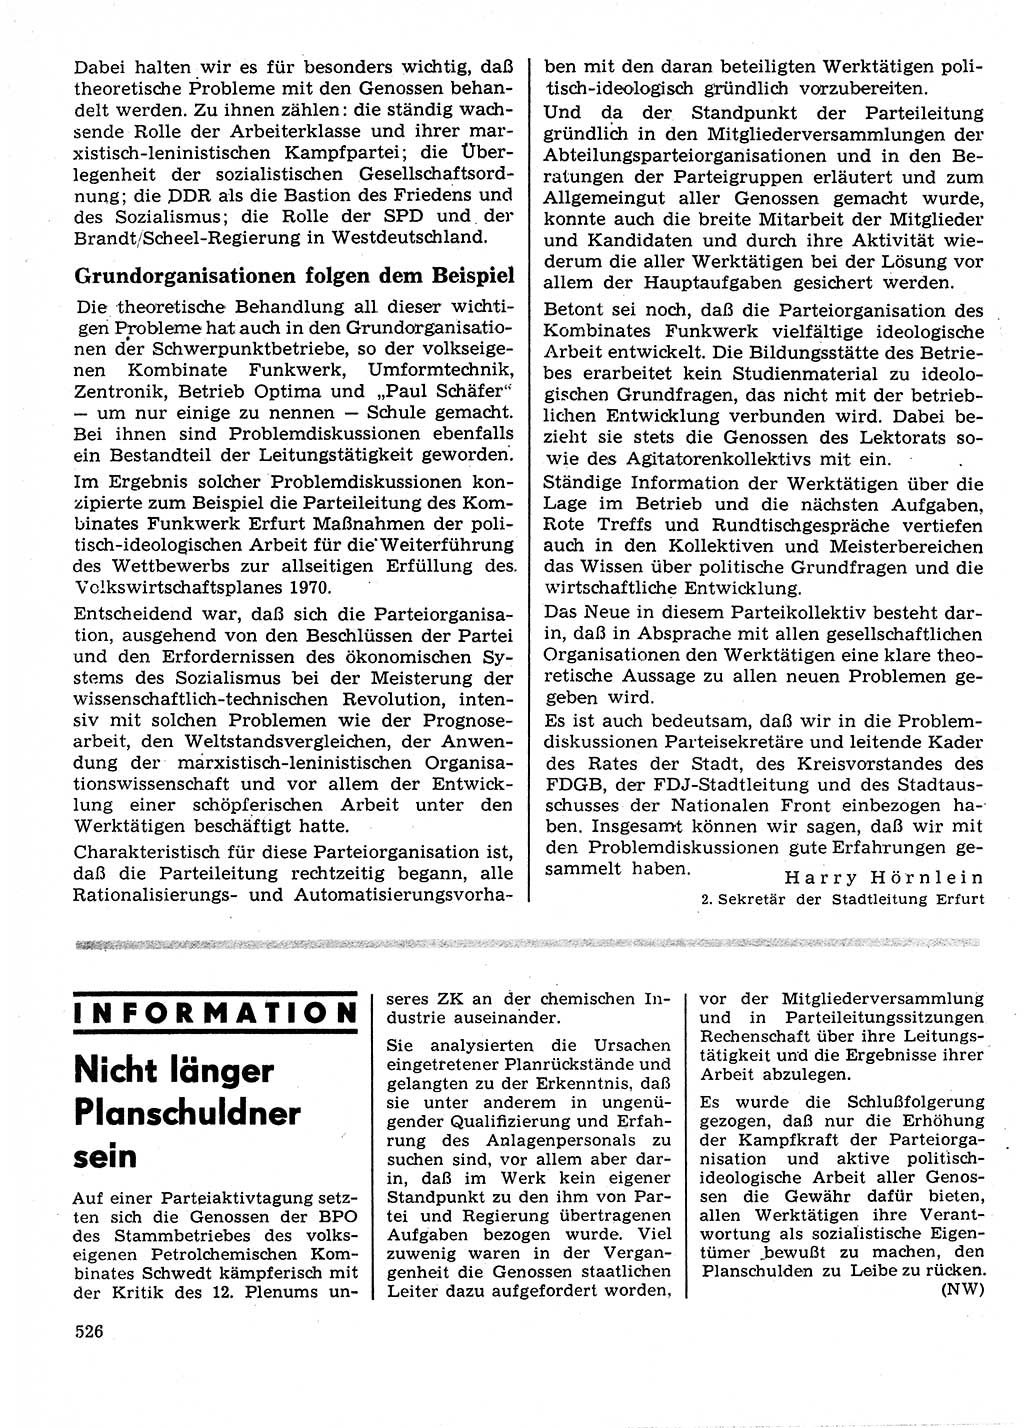 Neuer Weg (NW), Organ des Zentralkomitees (ZK) der SED (Sozialistische Einheitspartei Deutschlands) für Fragen des Parteilebens, 25. Jahrgang [Deutsche Demokratische Republik (DDR)] 1970, Seite 526 (NW ZK SED DDR 1970, S. 526)